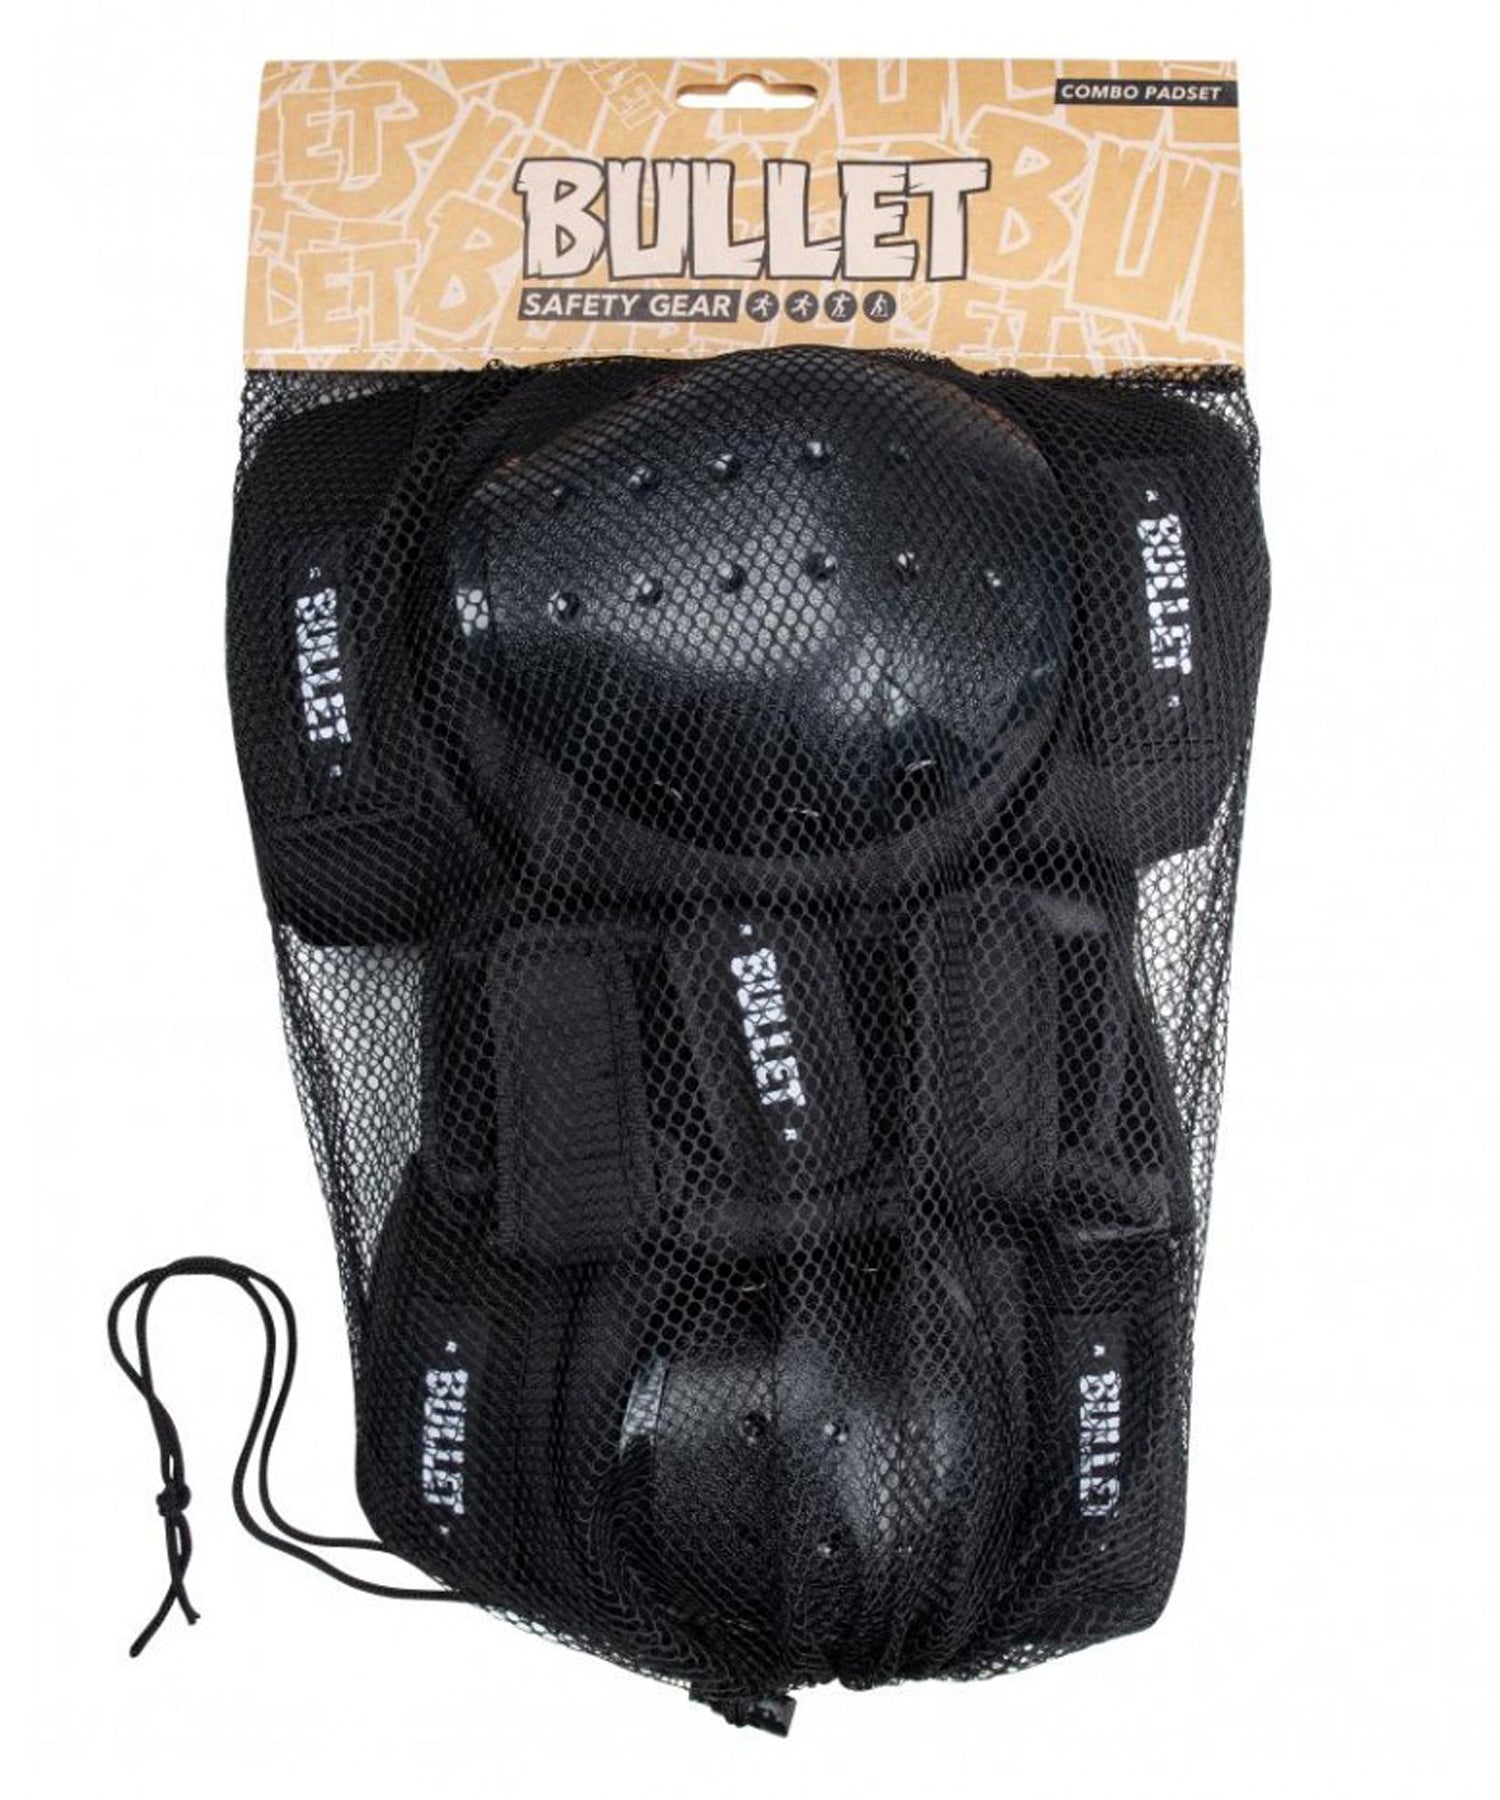 bullet-protecciones-skate-bullet-adulto-color negro-con-velcro-ajustable-tejido de calidad-acolchado-tapas-policarbonato